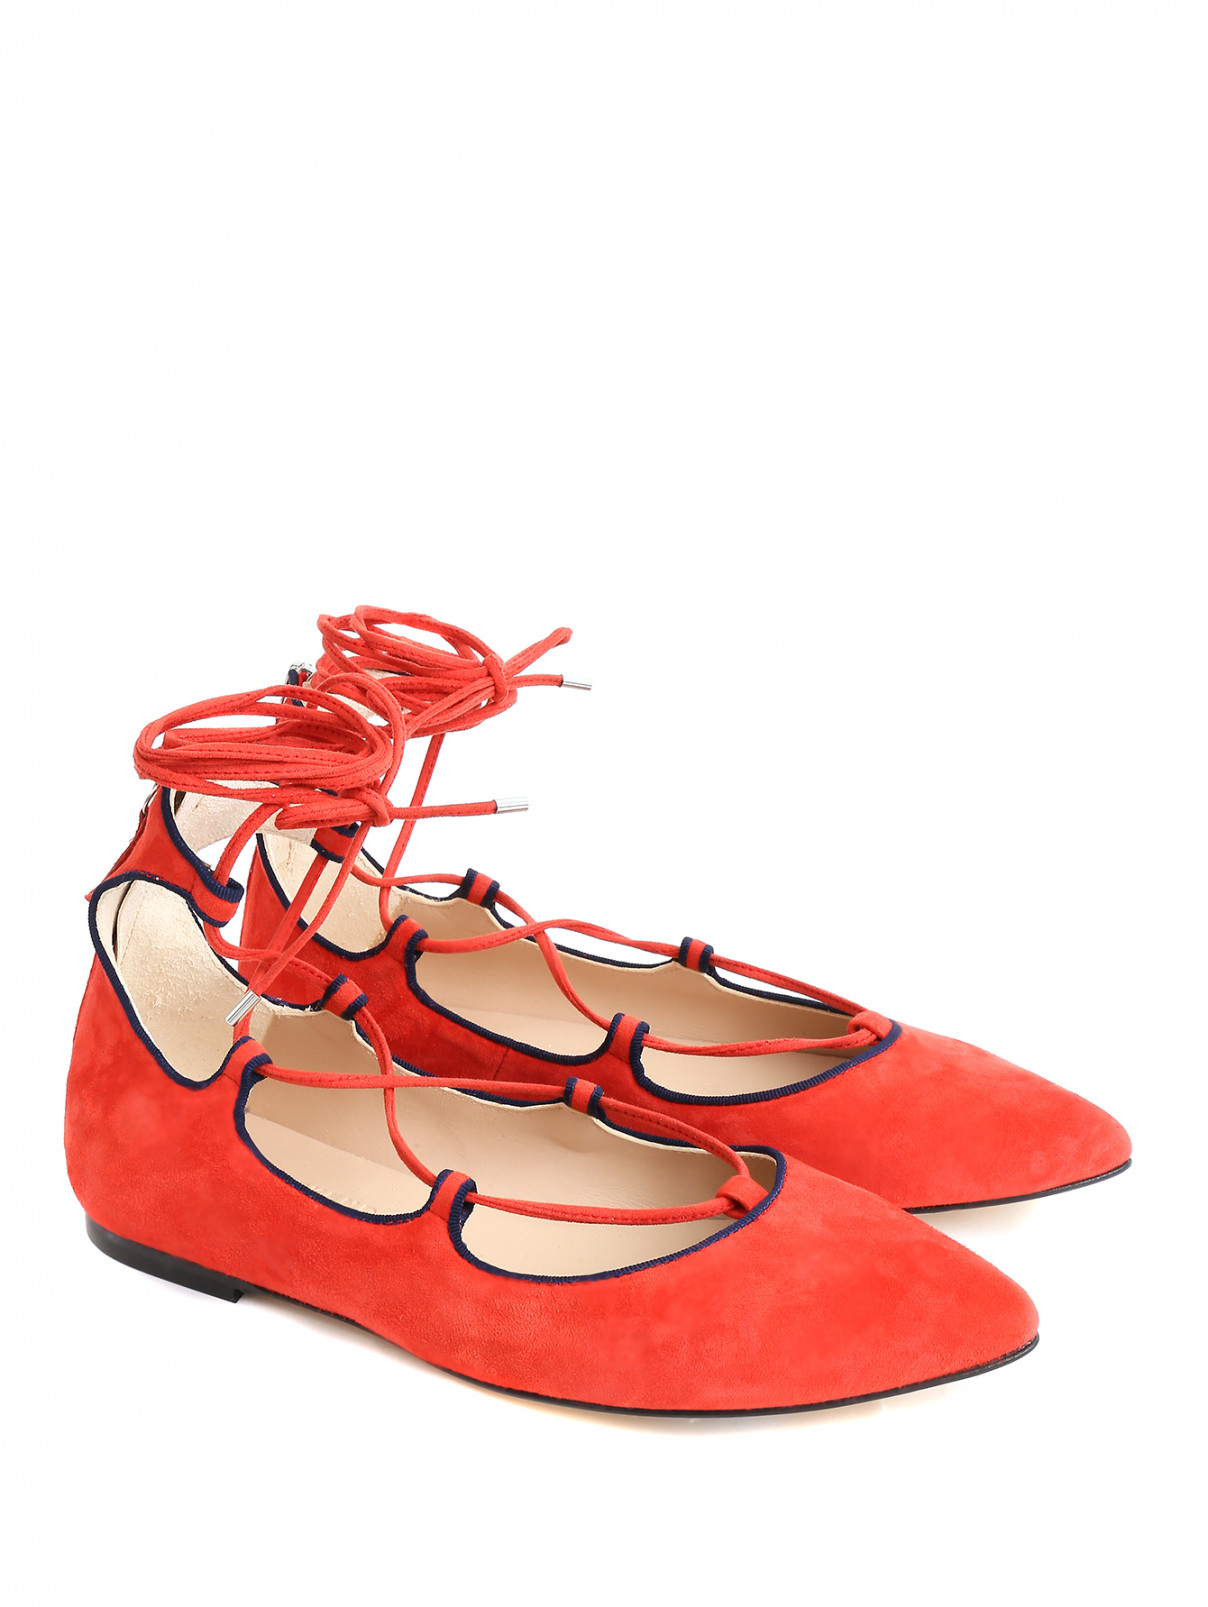 Туфли из замши на плоской подошве Weekend Max Mara  –  Общий вид  – Цвет:  Красный